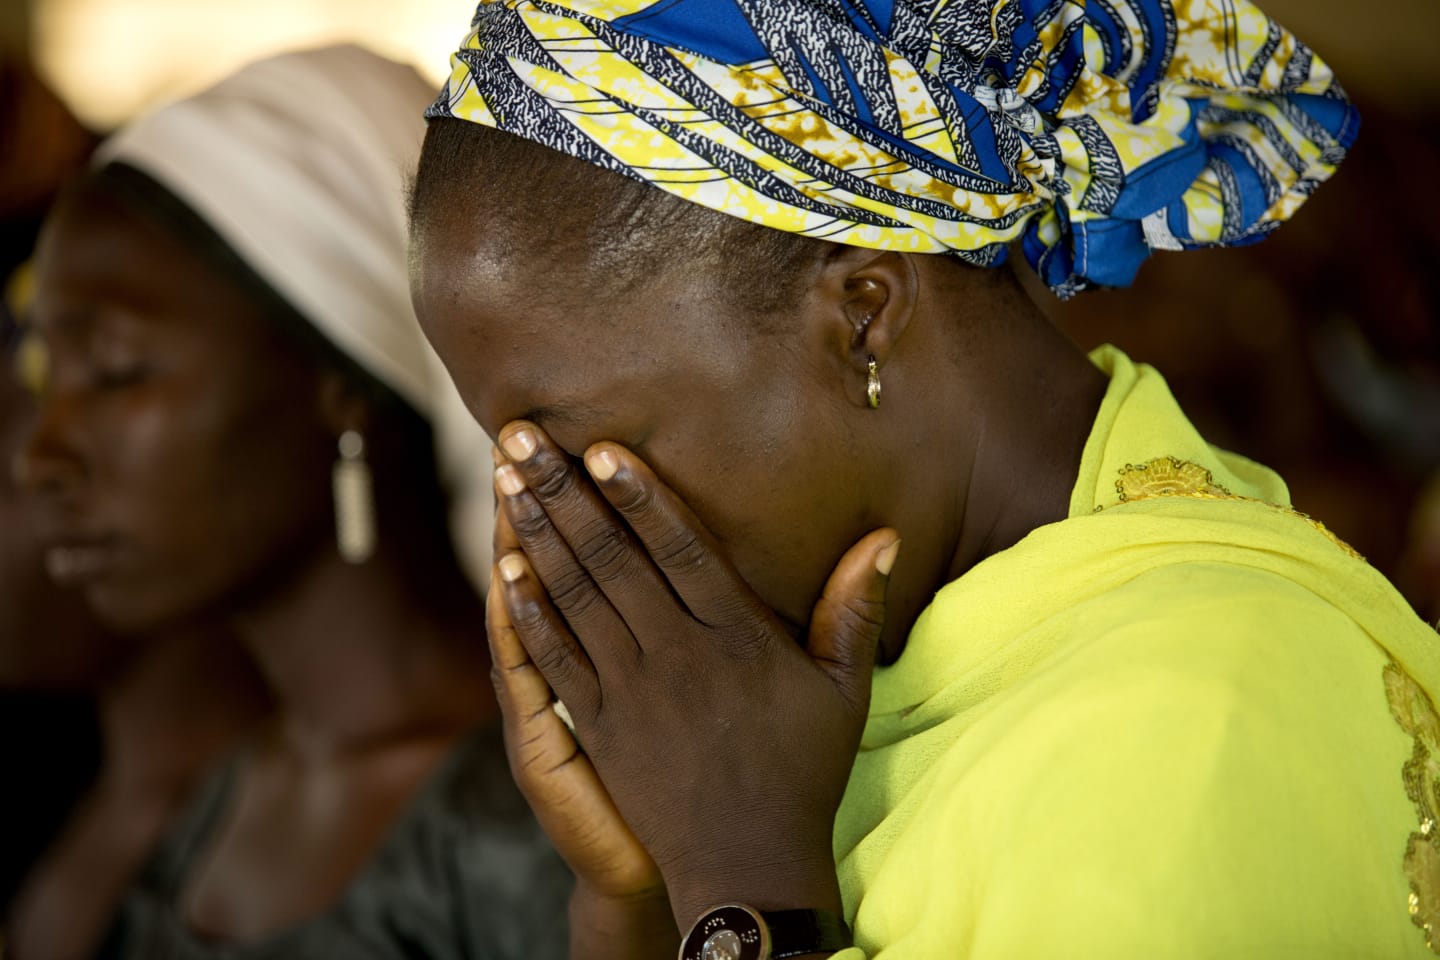 Homens armados sequestraram quatro cristãs na Nigéria